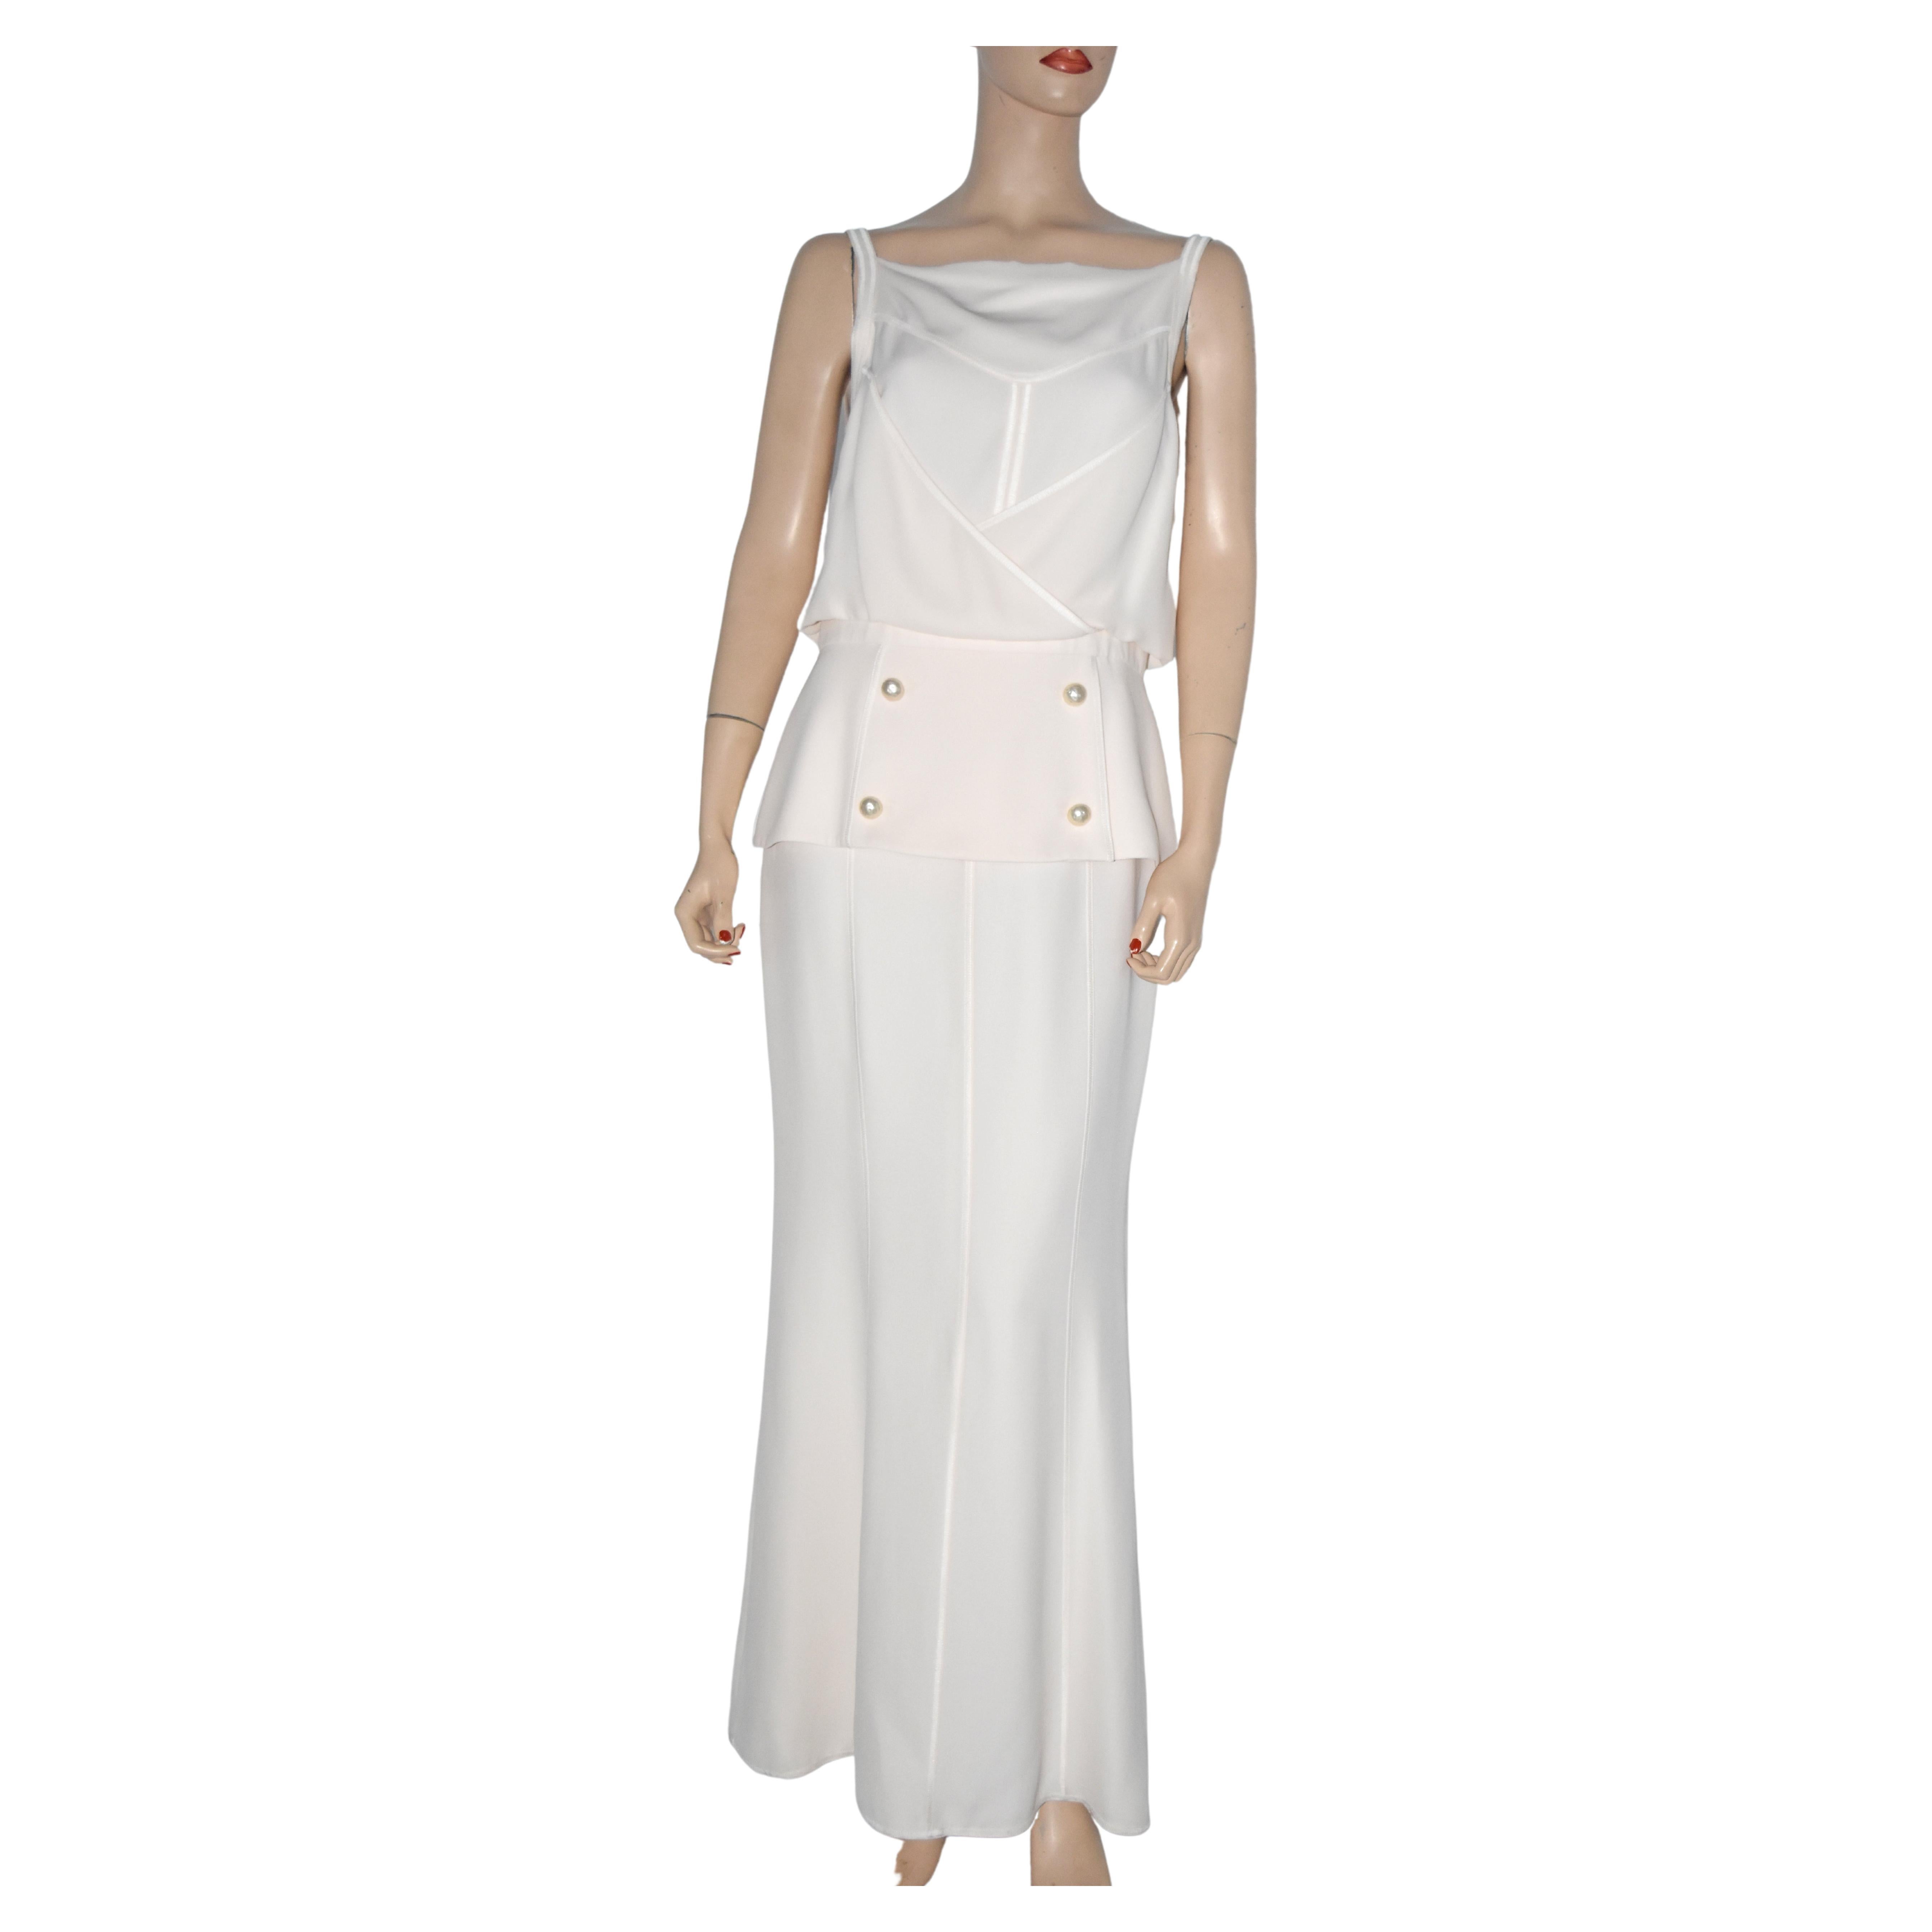 Chanel Kunstperlen verziertes Kleid in voller Länge FR 40 14C 2014 neu mit Etikett